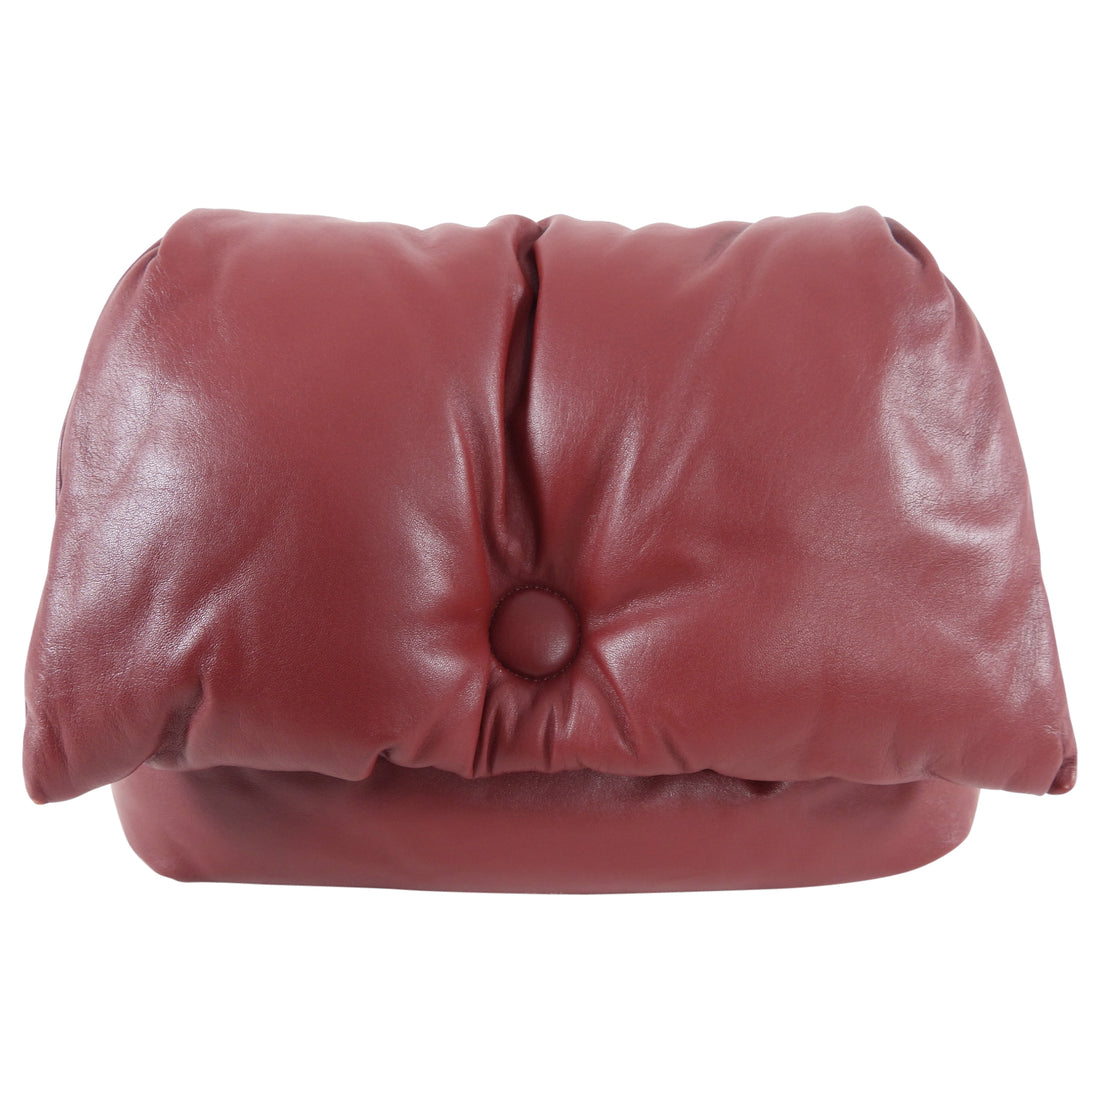 Celine Small Dark Red Pillow Shoulder Bag